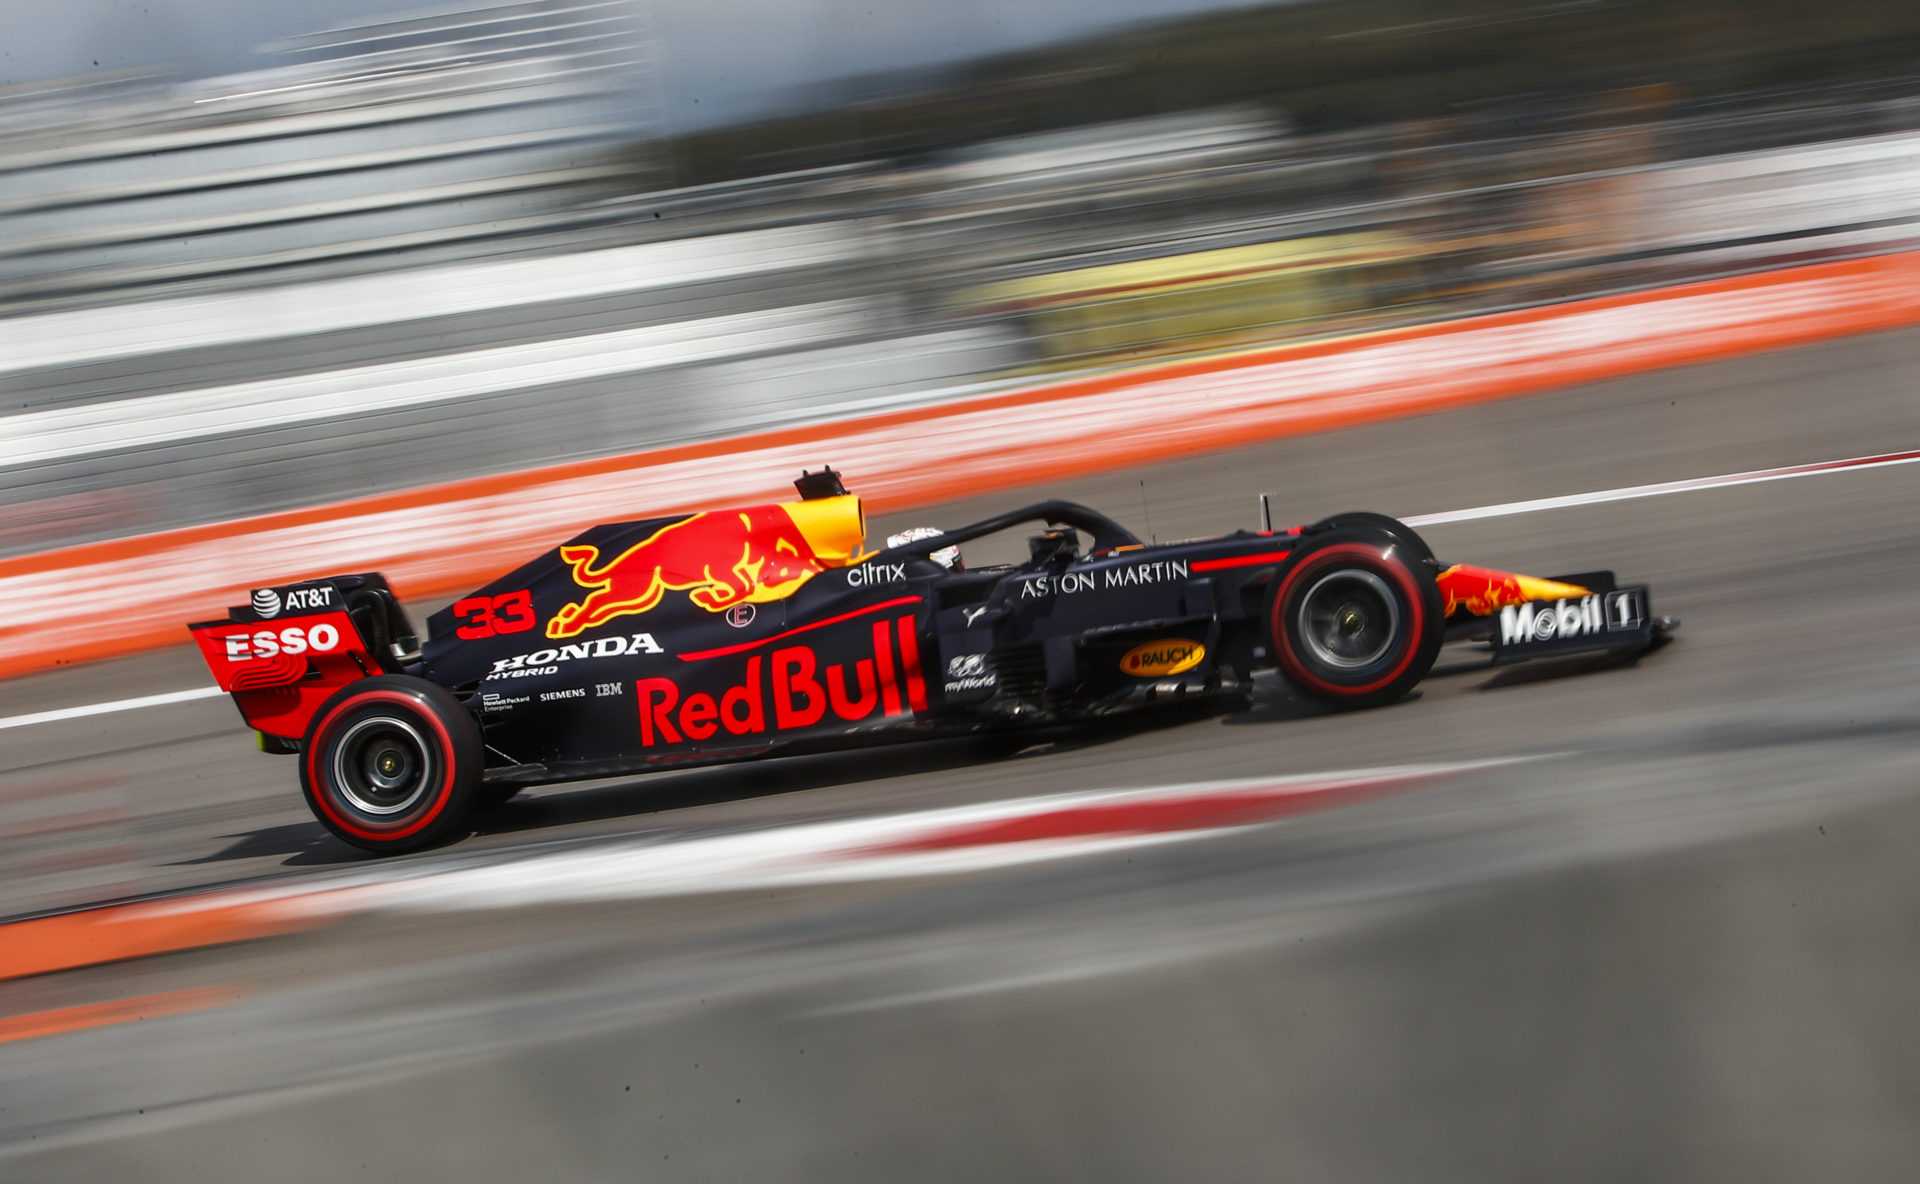 Honda, partenaire de Red Bull, quitte la F1 après 2021